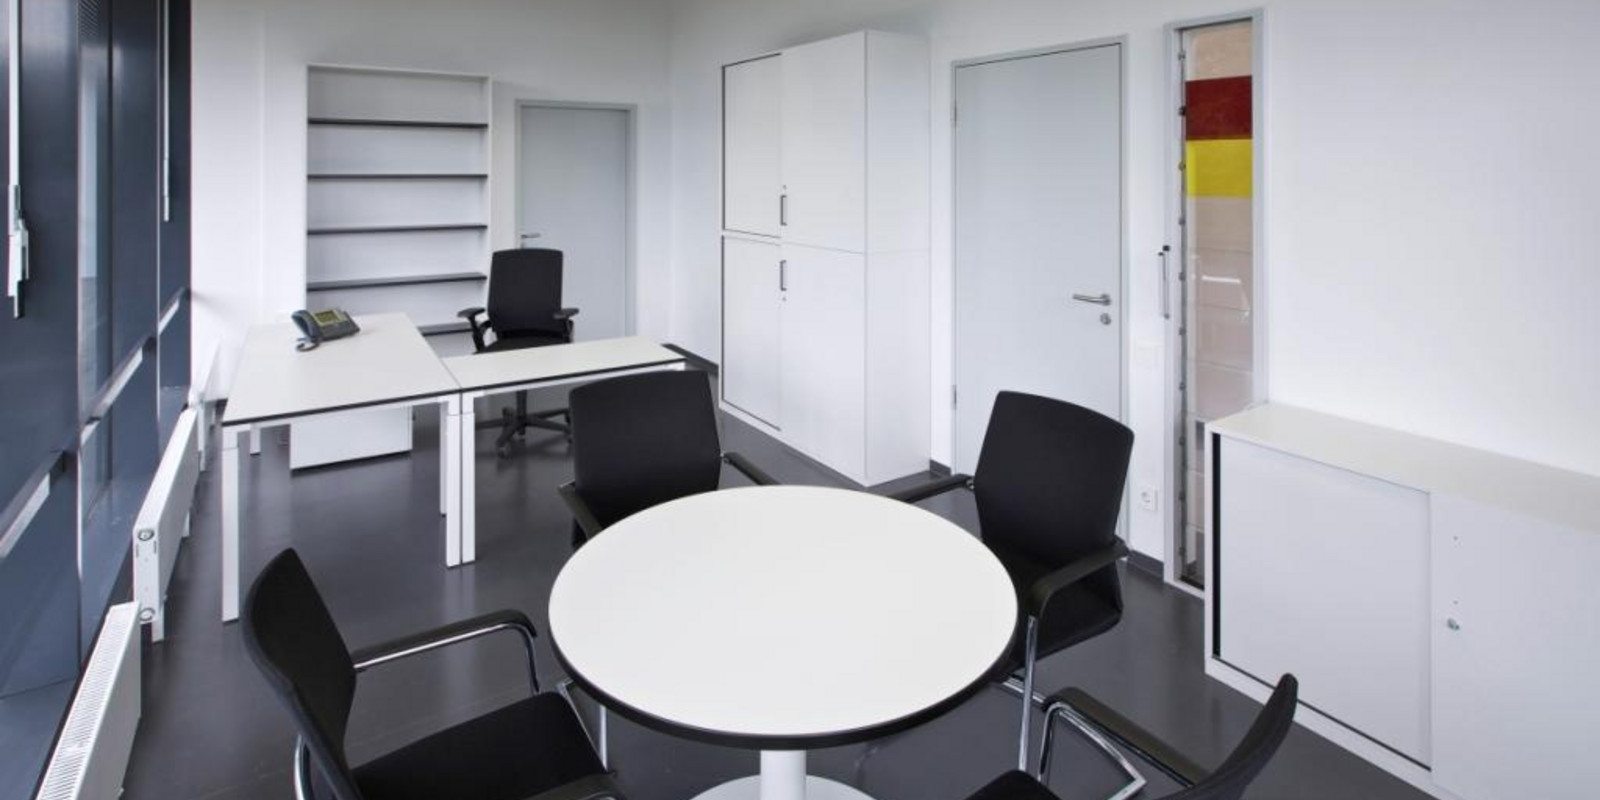 Institut BIPS erhält Einrichtung von pro office Bremen Bild 2